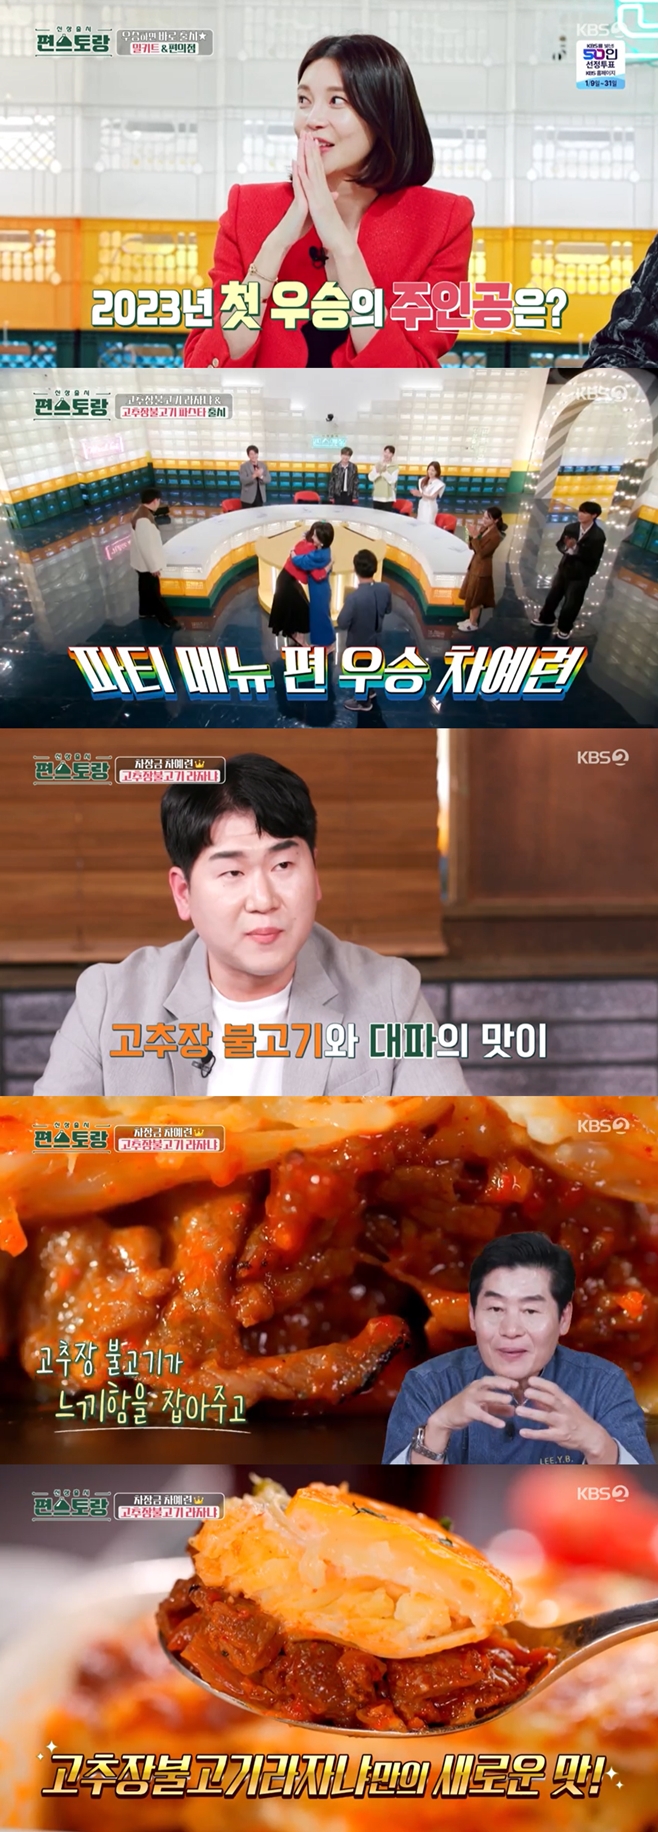 KBS2 신상출시 편스토랑, 차예련